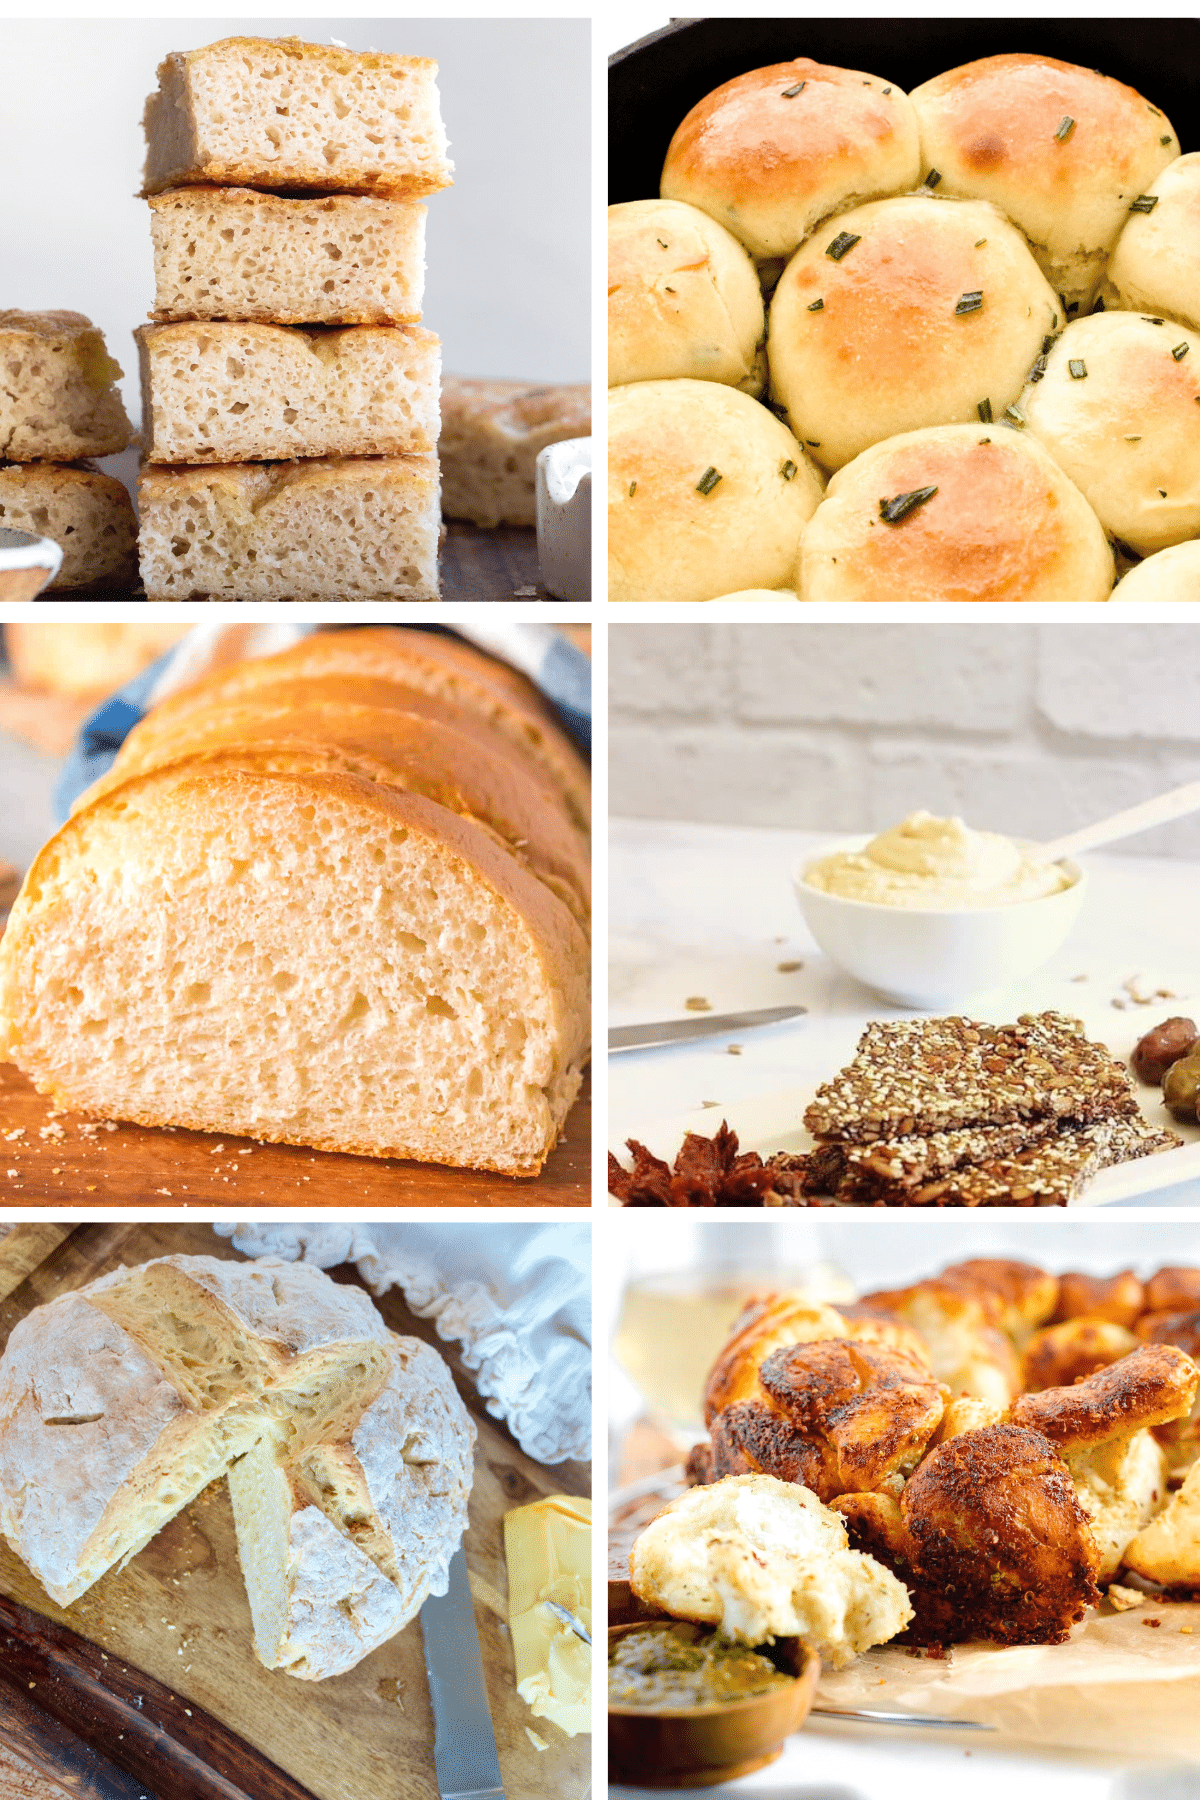 6 photos in image, L-R Focaccia, skillet rolls, white bread, gluten-free bread, soda bread and Challah bread.